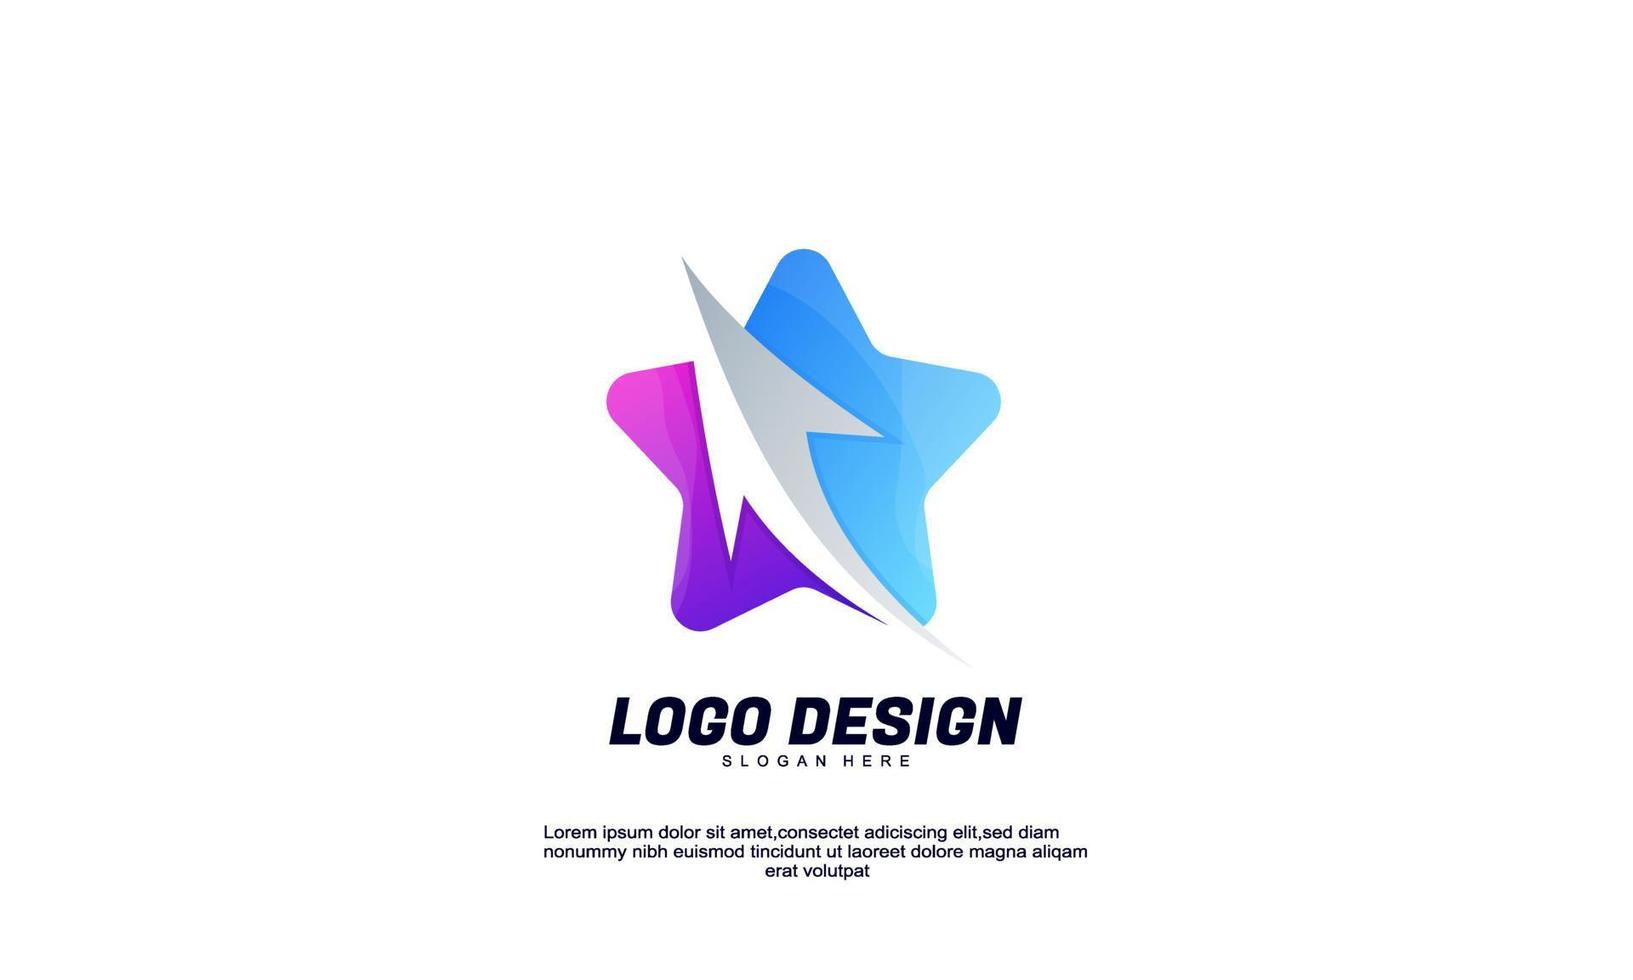 estrella y flecha de logotipo de idea creativa abstracta de vector de stock para empresa de marca y plantilla de diseño de color degradado de negocio